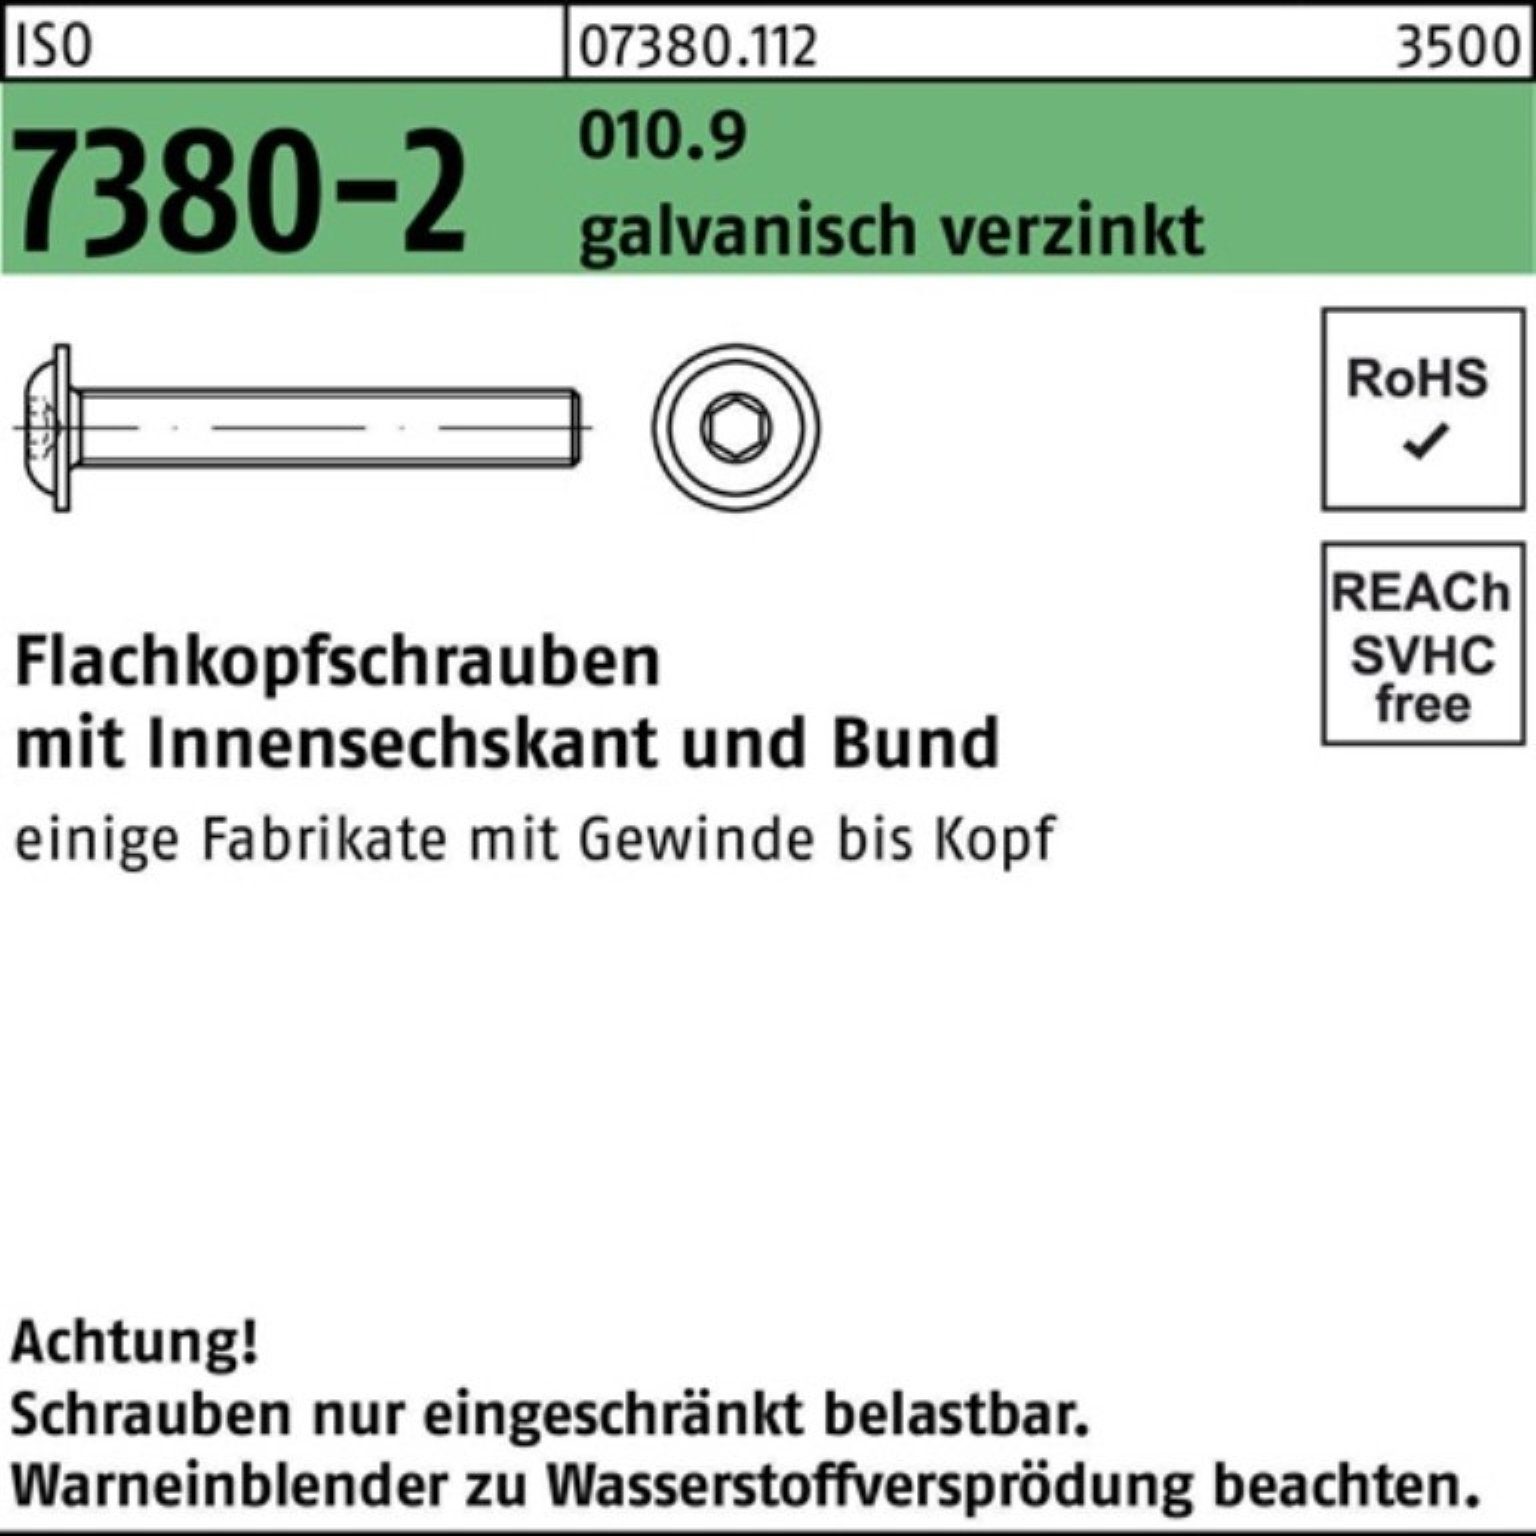 Reyher Schraube 200er gal Bund/Innen-6kt 010.9 Pack Flachkopfschraube ISO 7380-2 M6x45